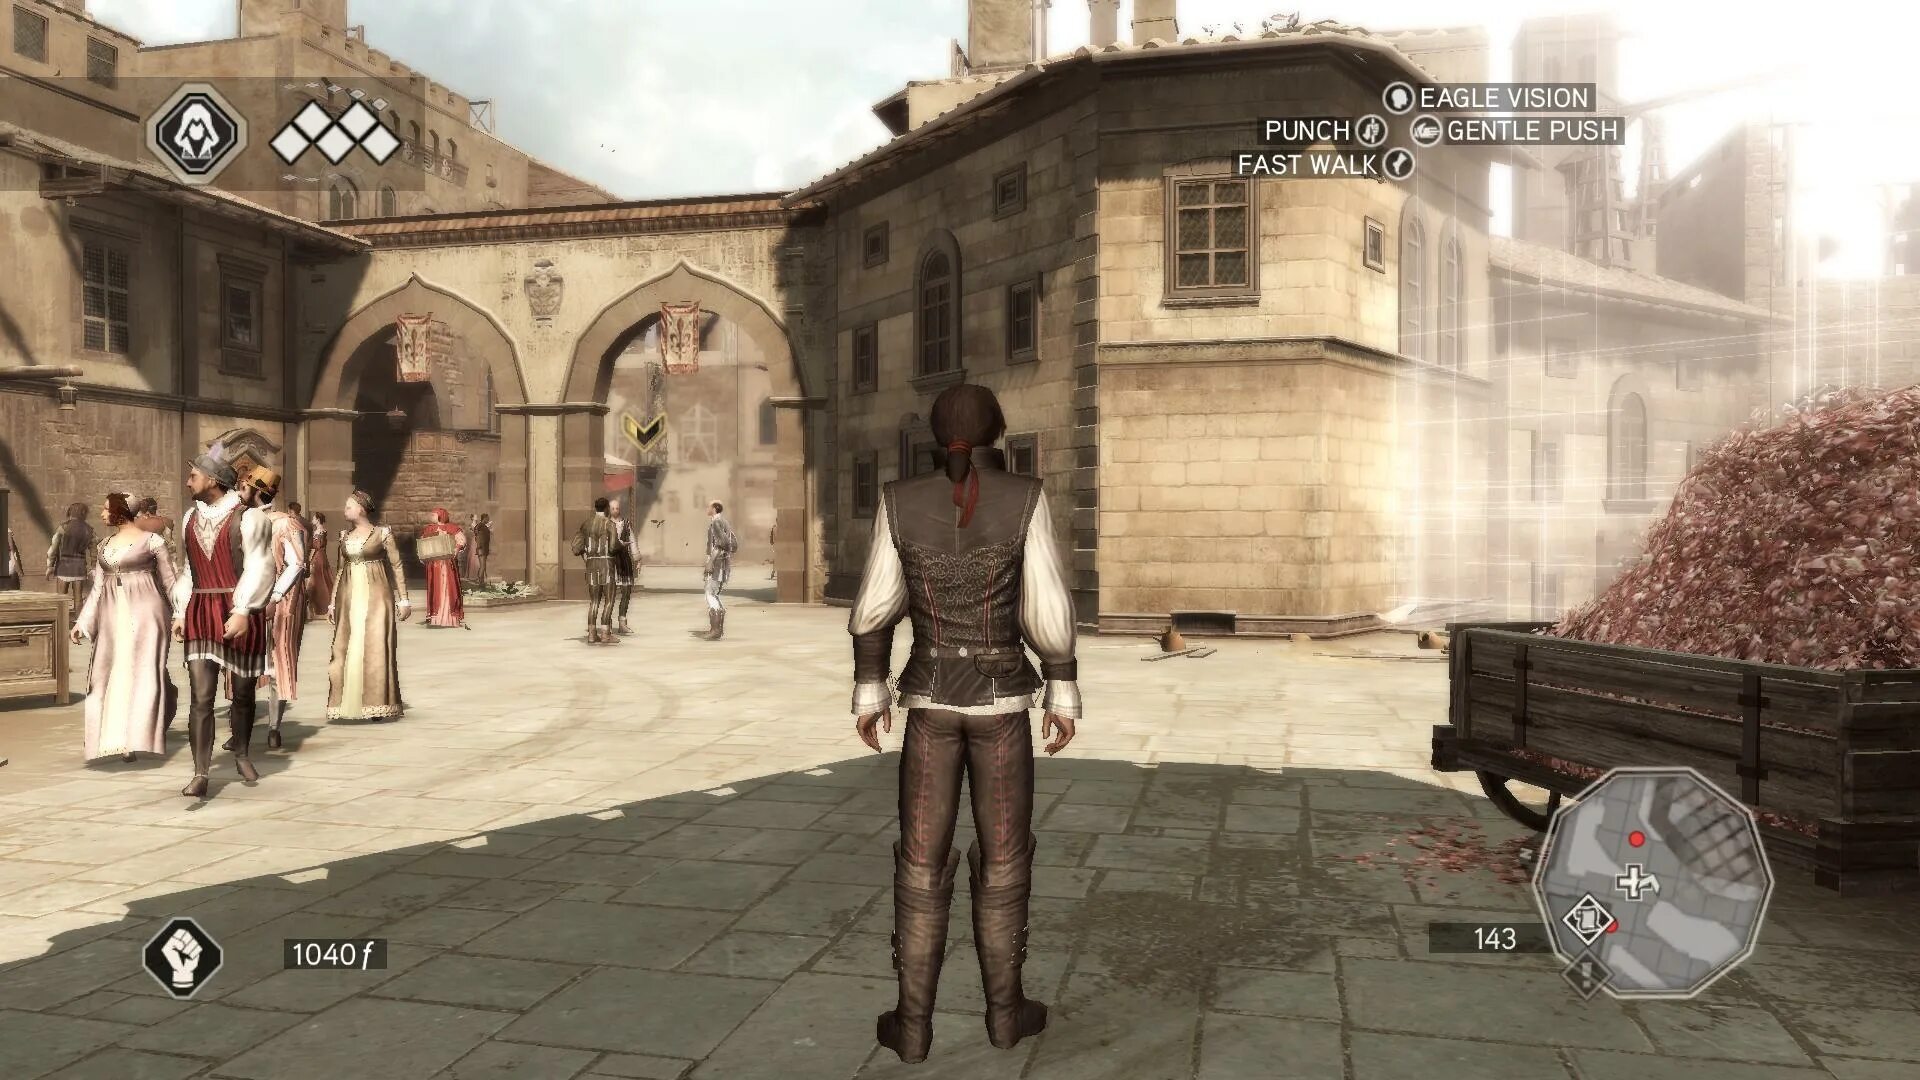 Ассасин Крид 2 иксбокс 360. Assassin’s Creed 2 (Xbox 360) Скриншот. Assassins Creed 2 Скуола Сан Марко. Ассасин 2 загадки